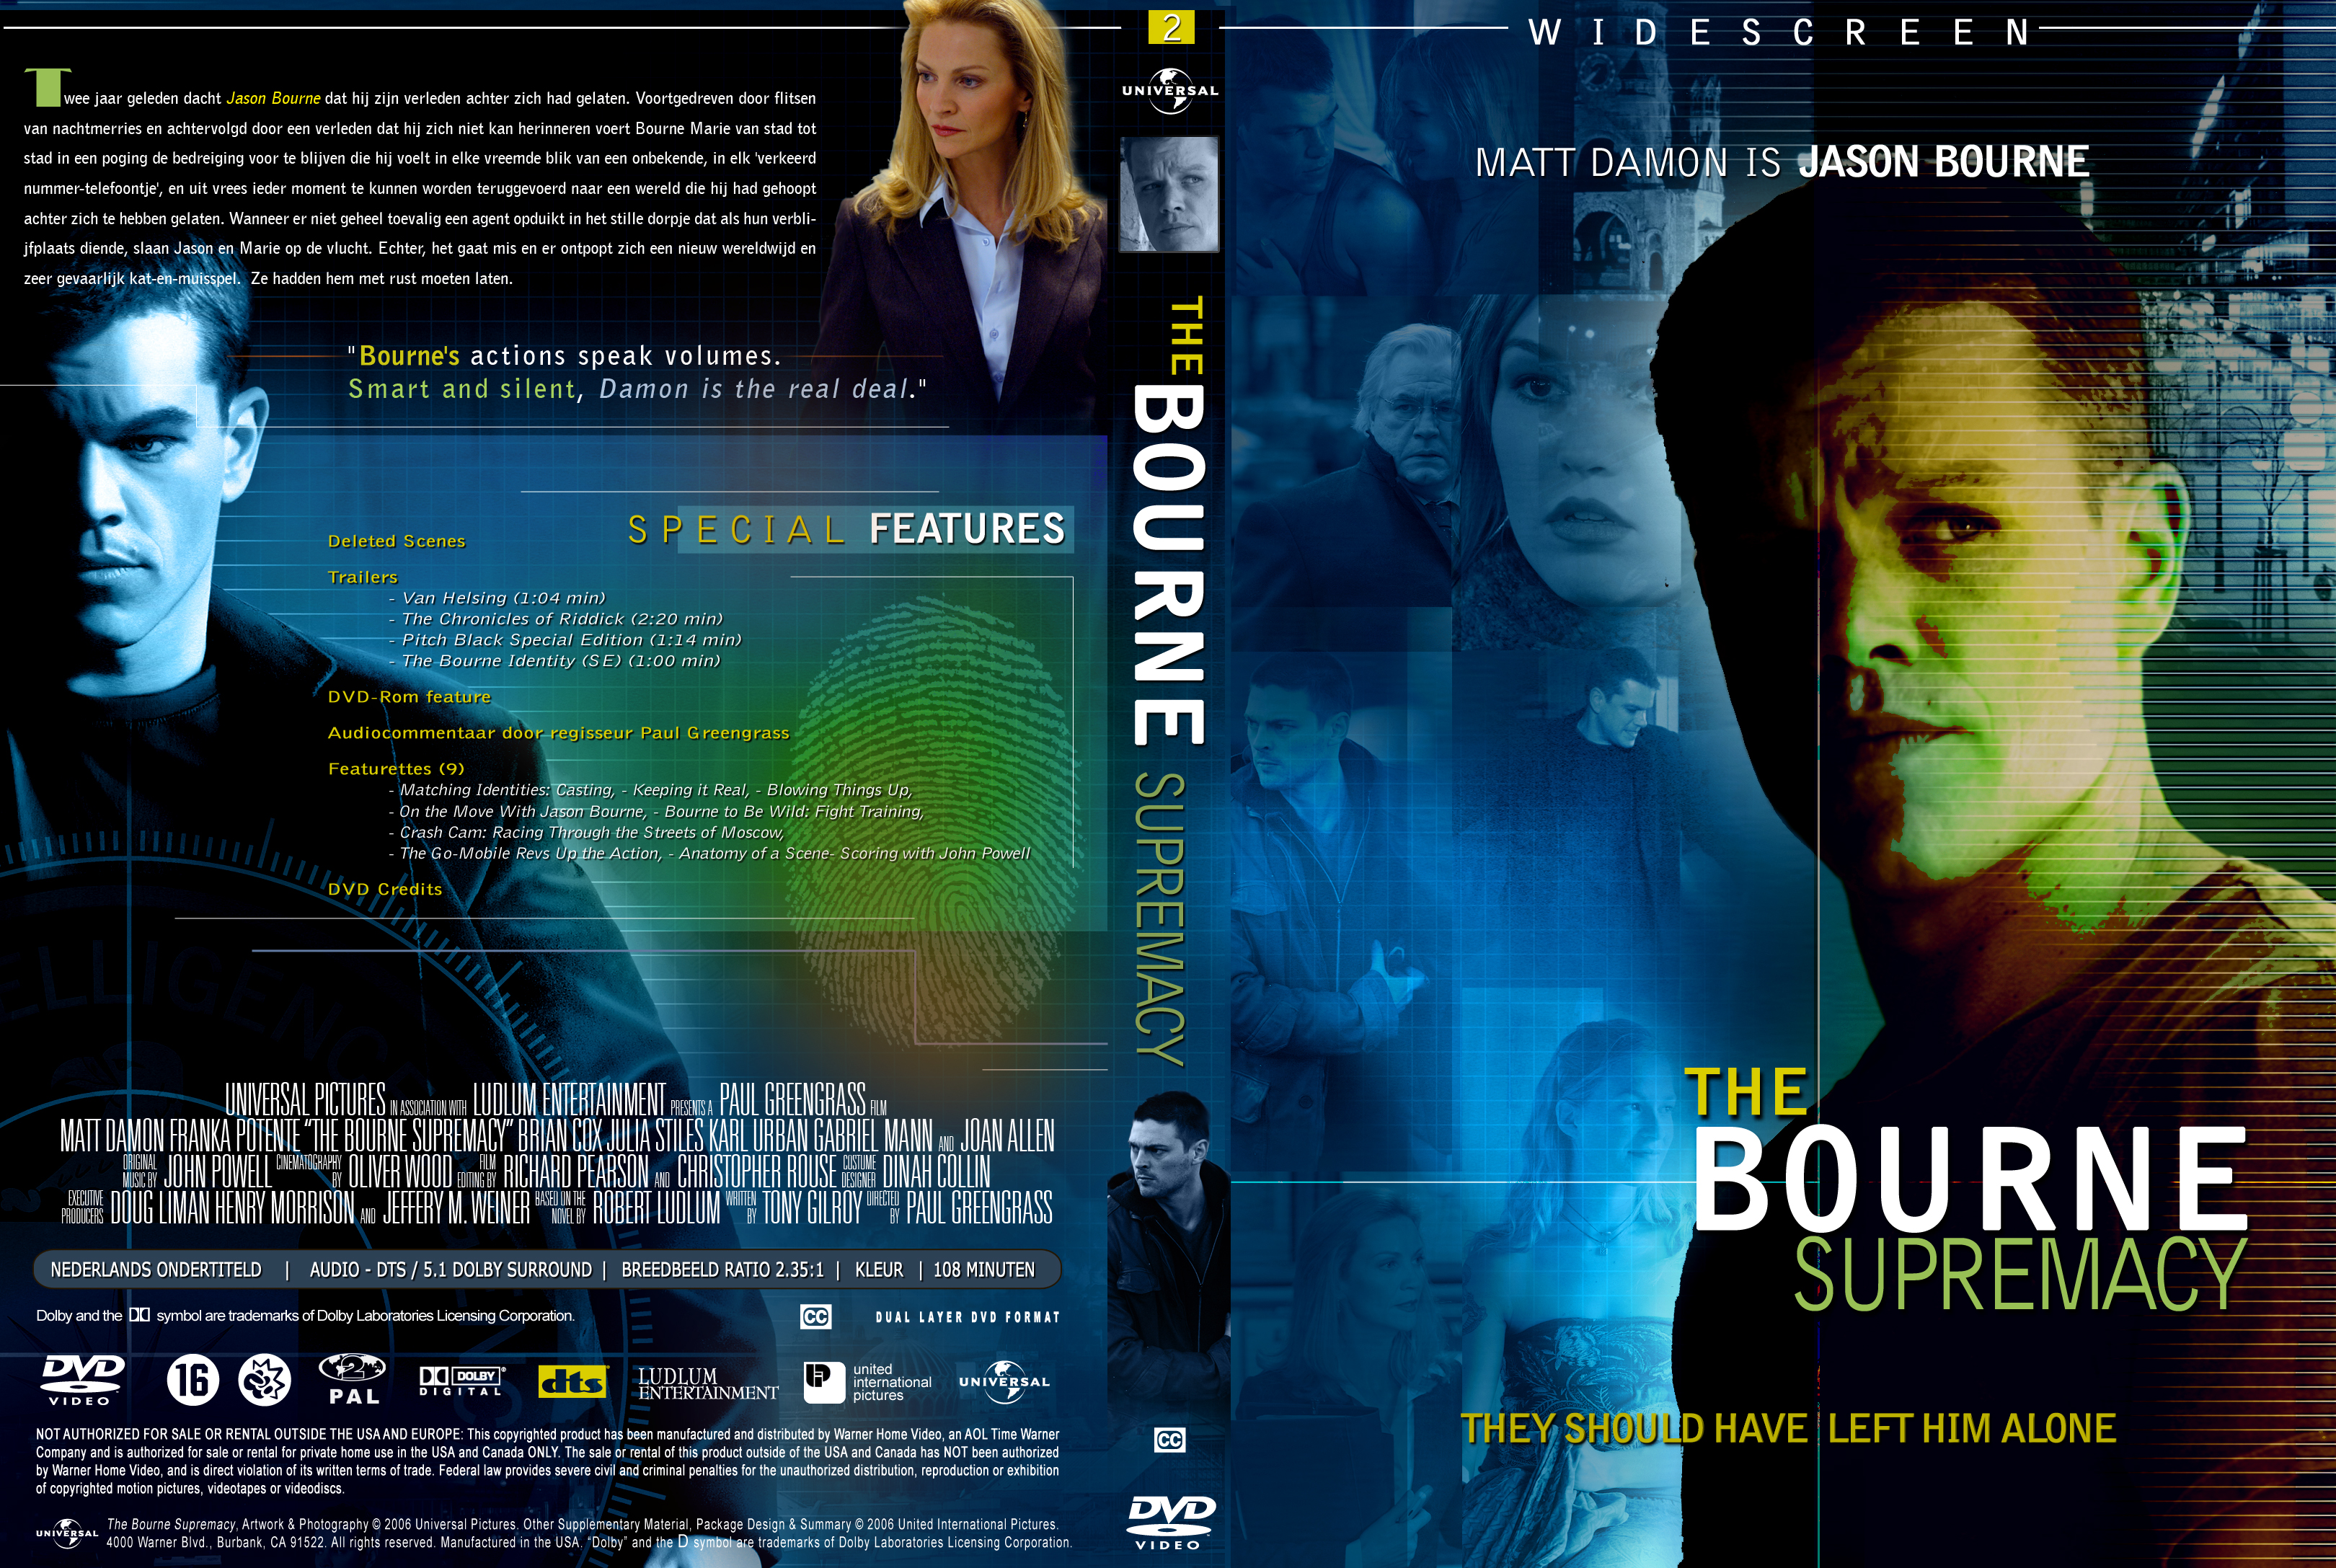 The Bourne Supremacy custom